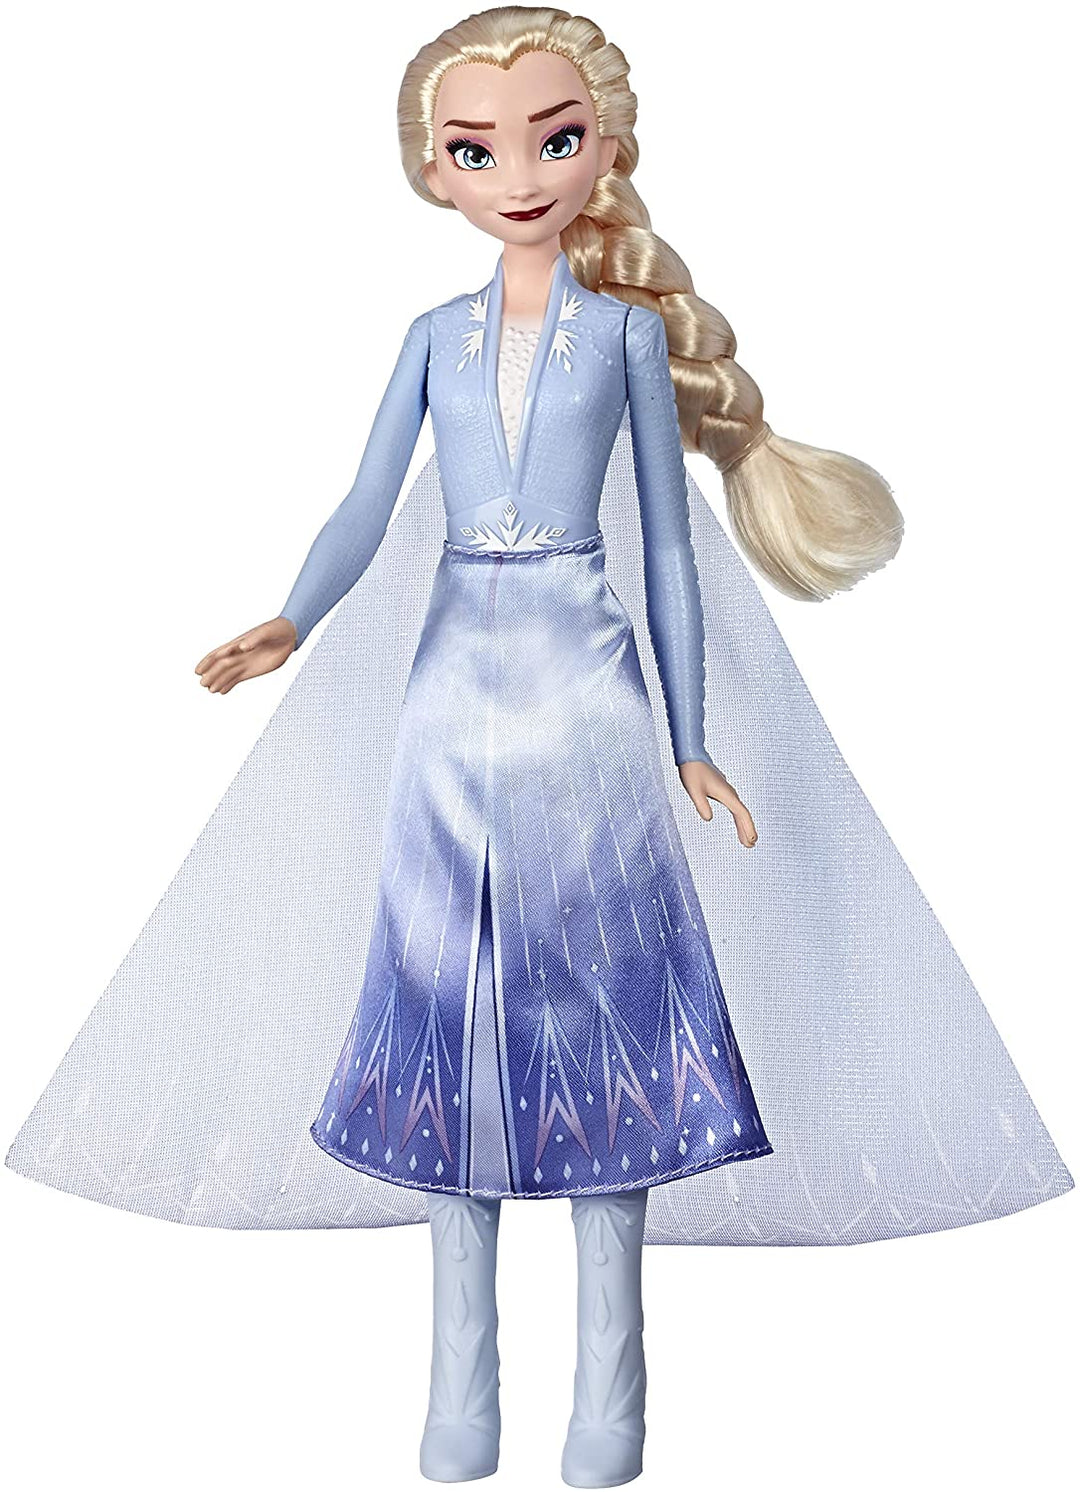 Disney Frozen Elsa Magische wirbelnde Abenteuer-Modepuppe, die aufleuchtet, inspiriert von Disneys Frozen 2-Film